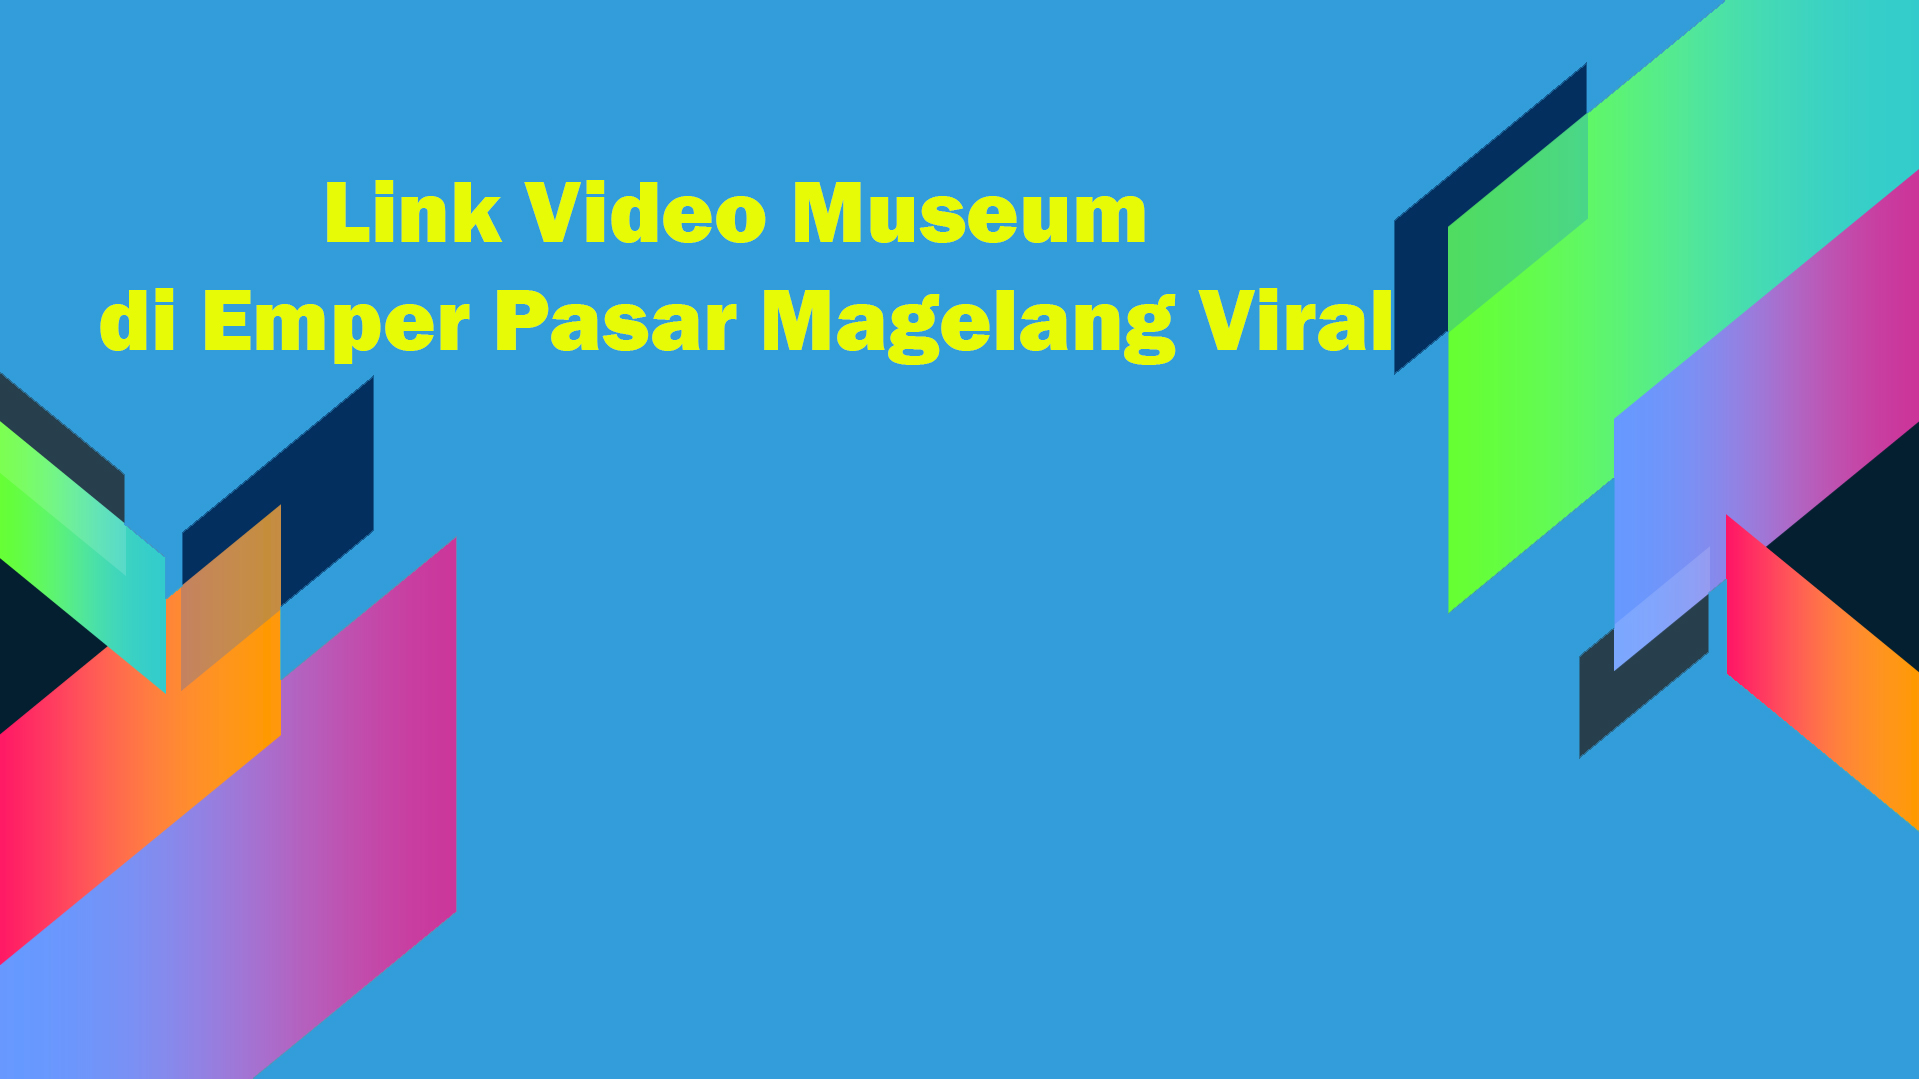 Link Video Museum di Emper Pasar Magelang Viral